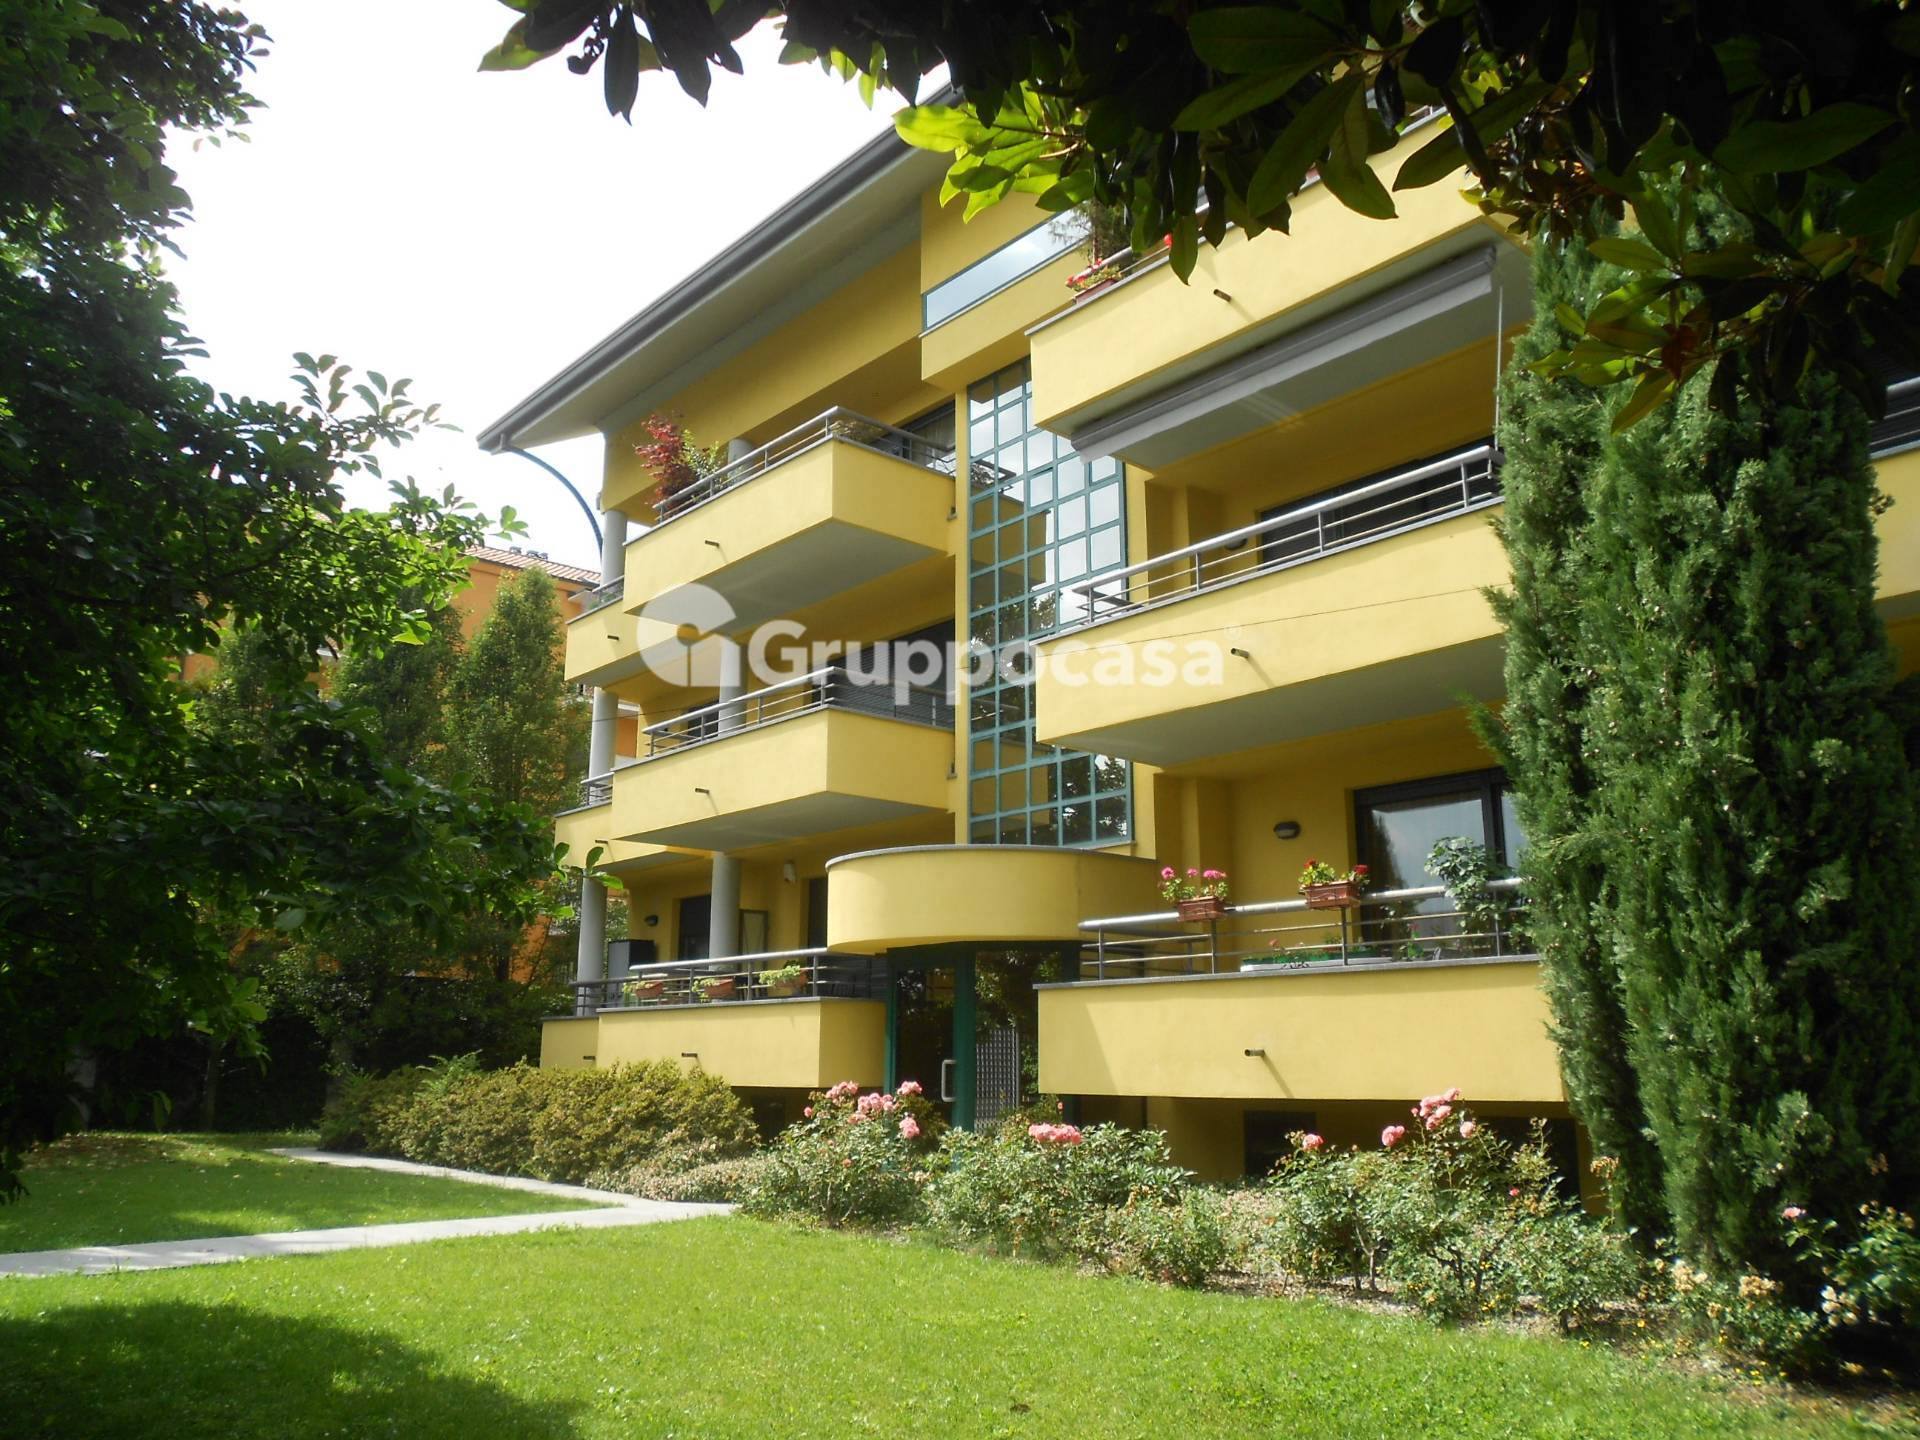 Appartamento in vendita a Magenta, 3 locali, prezzo € 240.000 | PortaleAgenzieImmobiliari.it